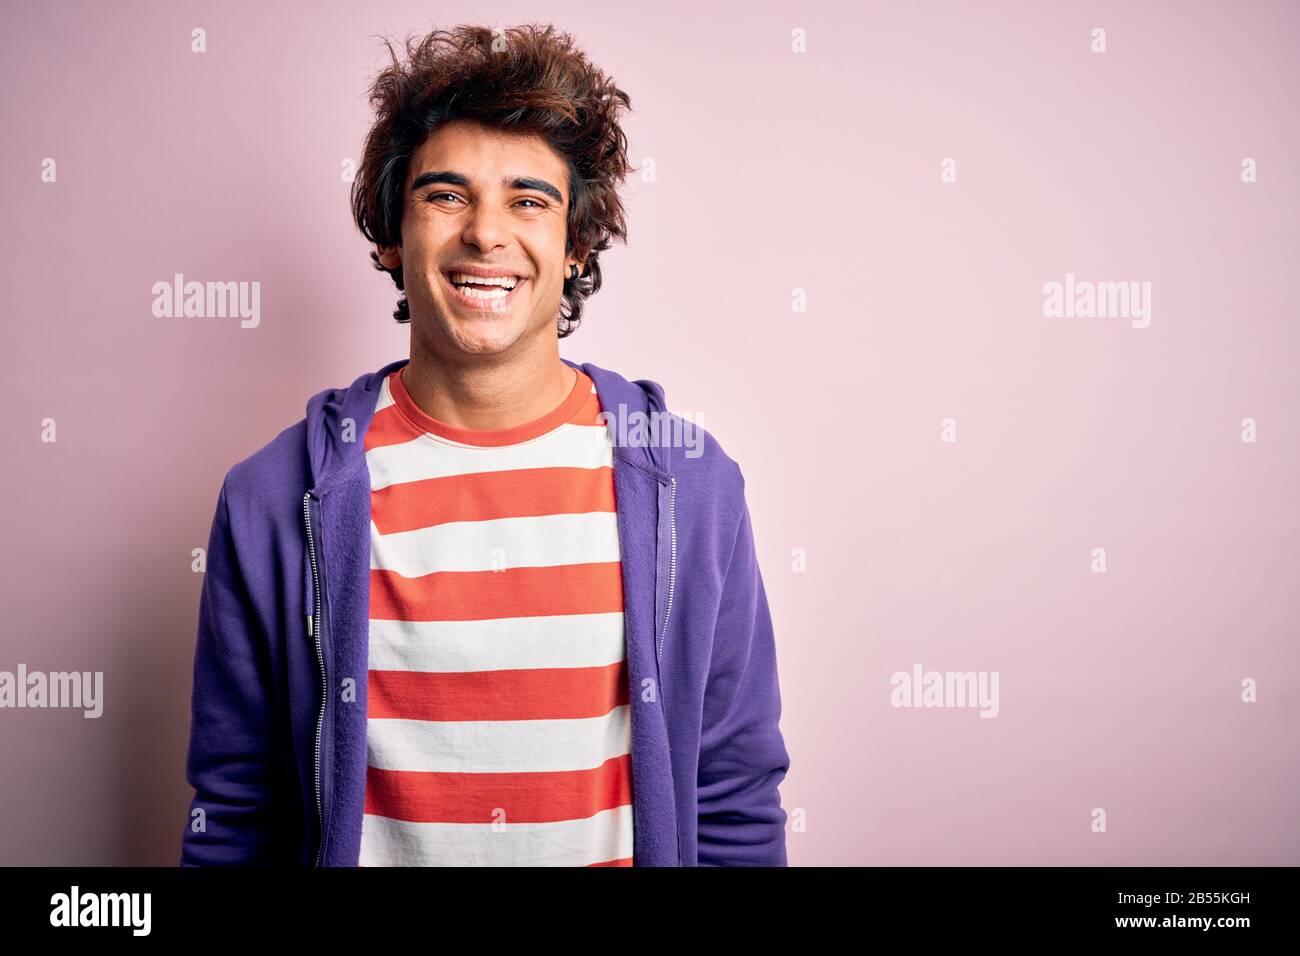 Jeune homme portant un t-shirt rayé et un sweat-shirt violet sur fond rose isolé avec un sourire heureux et frais sur le visage. Personne chanceux. Banque D'Images